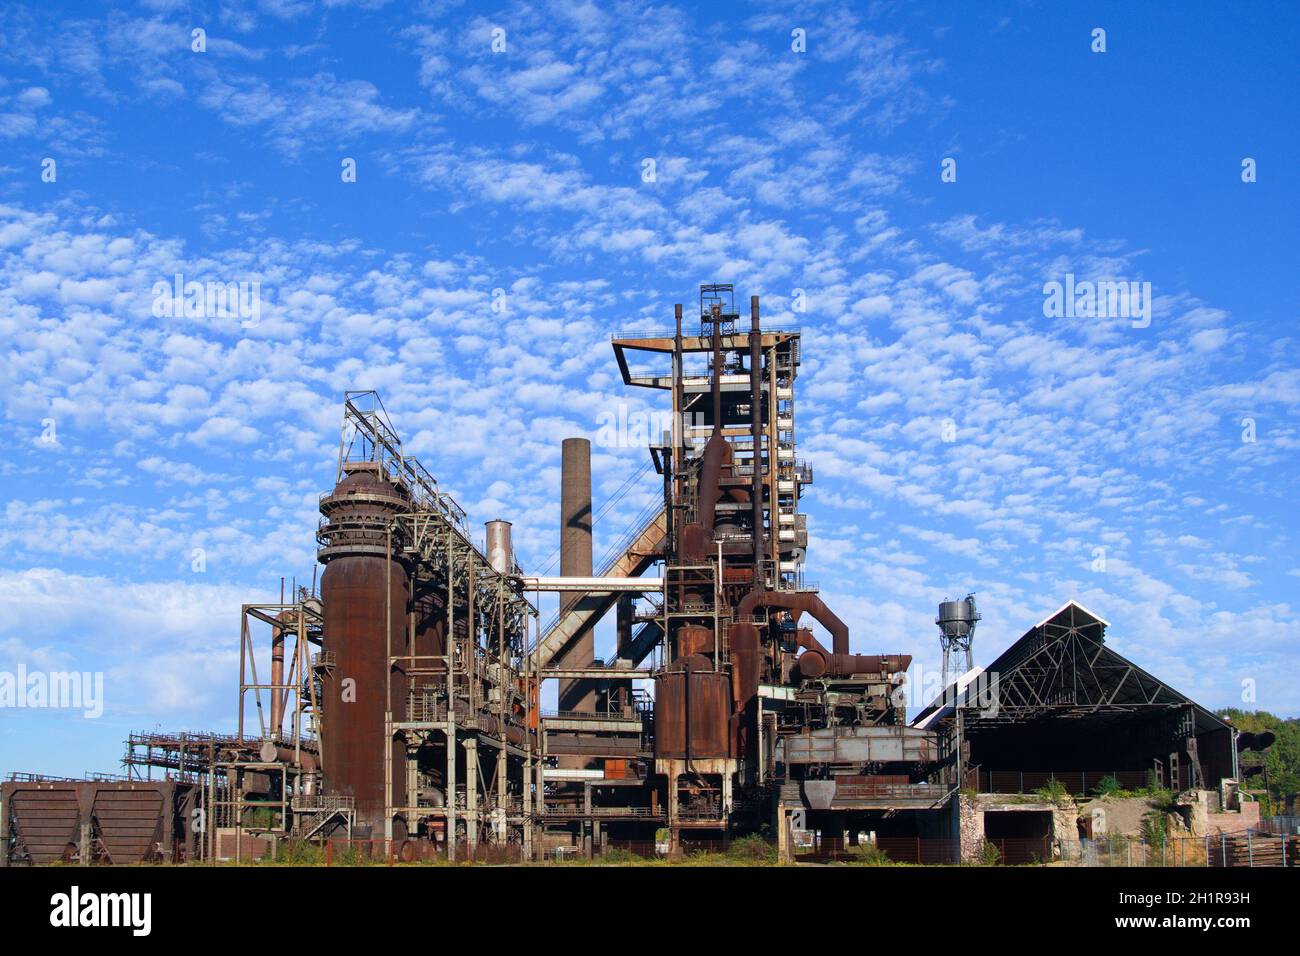 Verrostete und stillgelegte Industrie Barracke im Ruhrpott vor blauem Himmel mit Wolken im Sommer Stock Photo